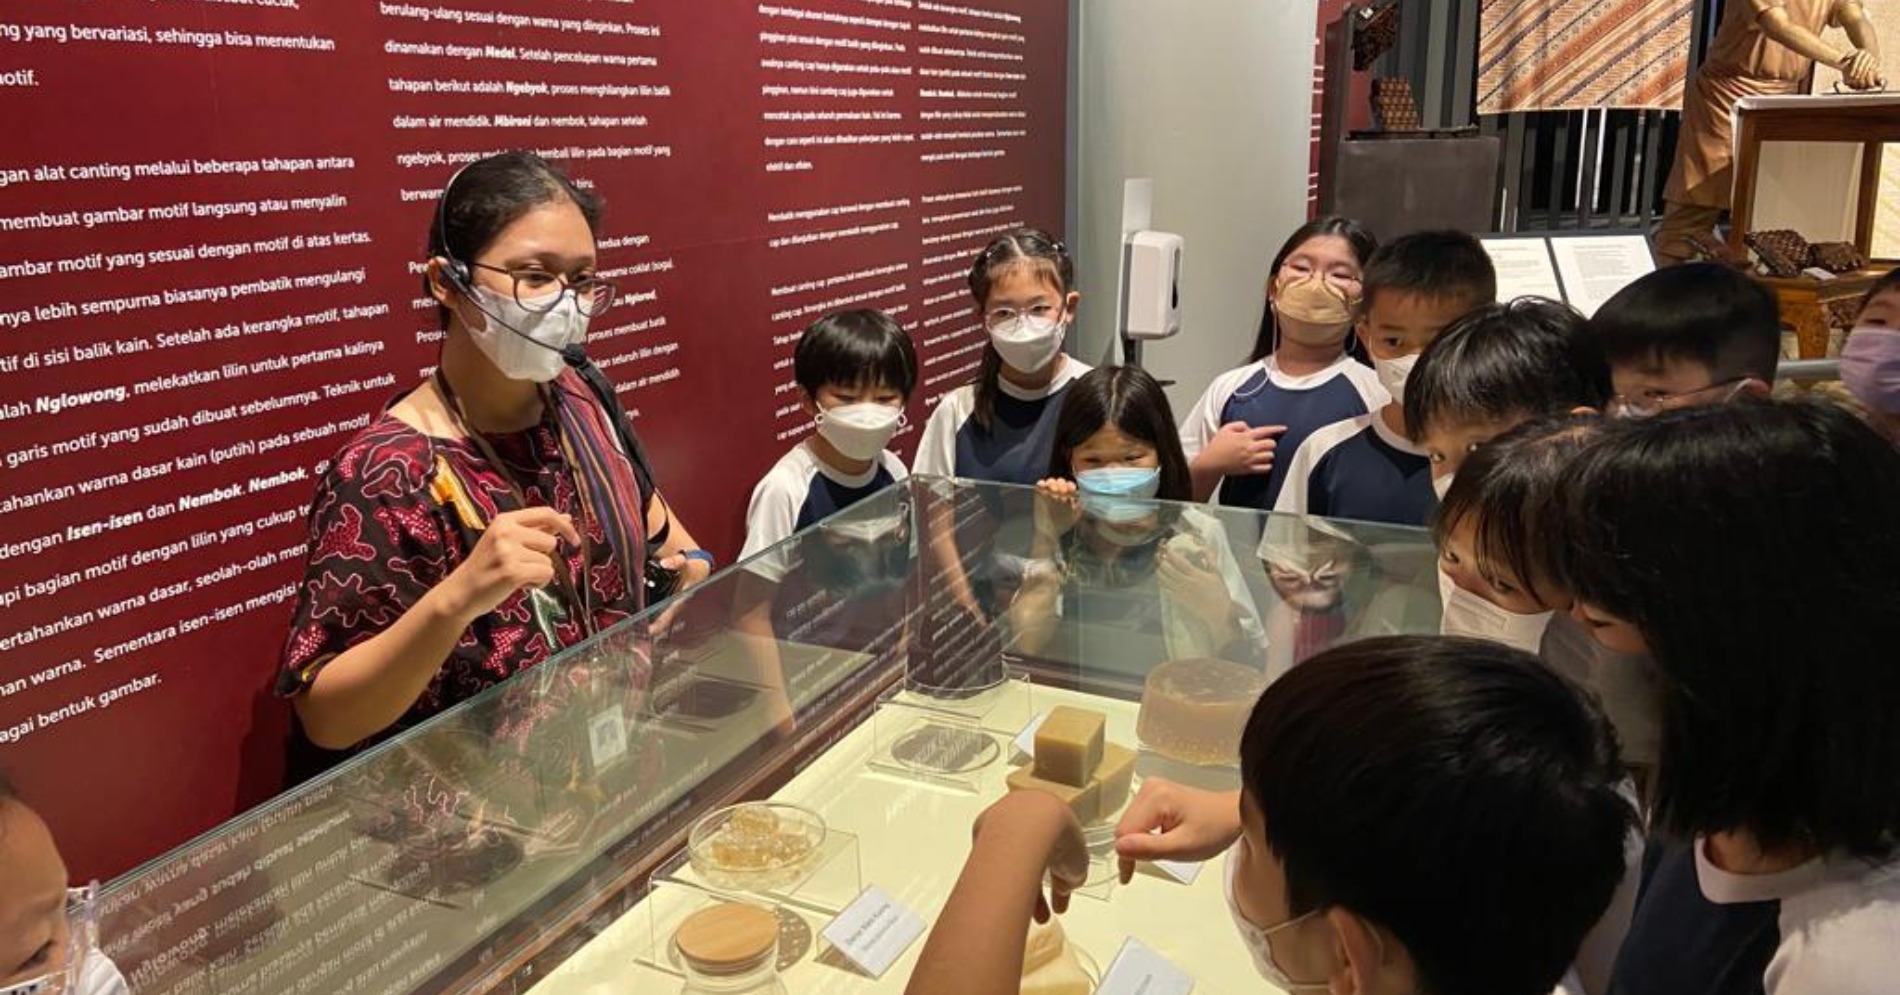 Anak-anak sedang belajar memahami tentang batik di Museum Batik (sumber gambar : IHA)